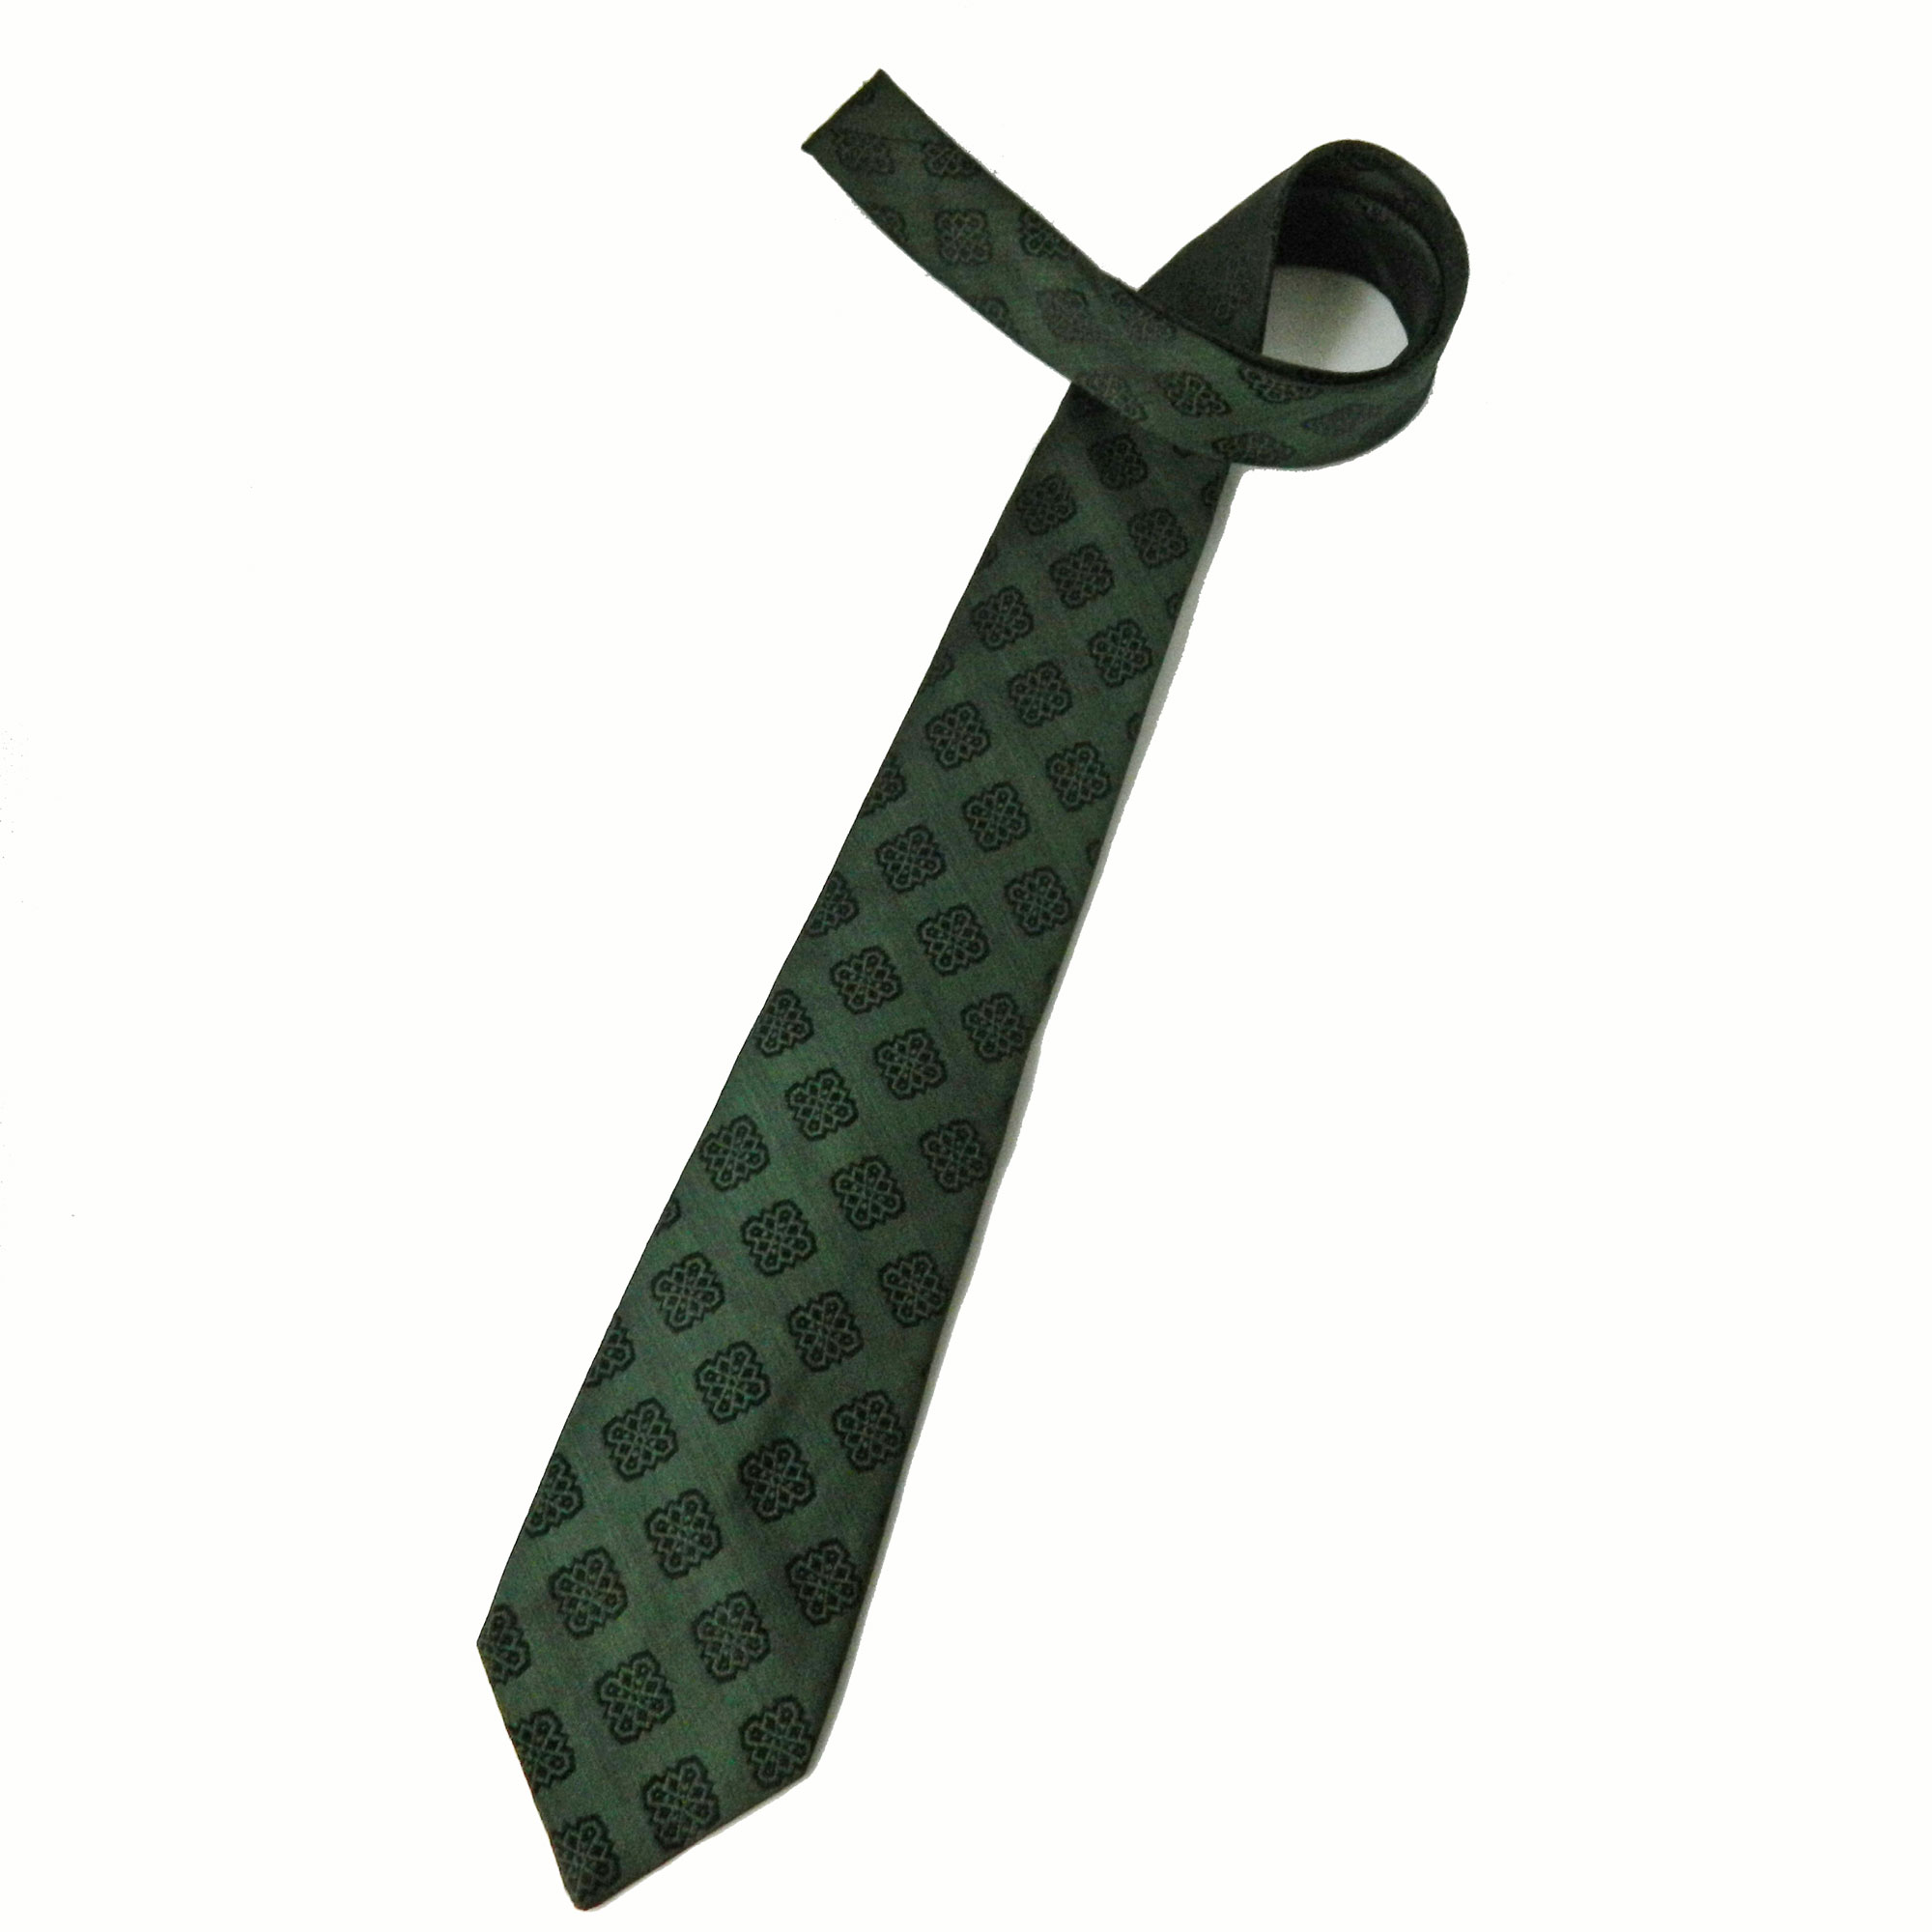 1960s Christian Dior sharkskin tie